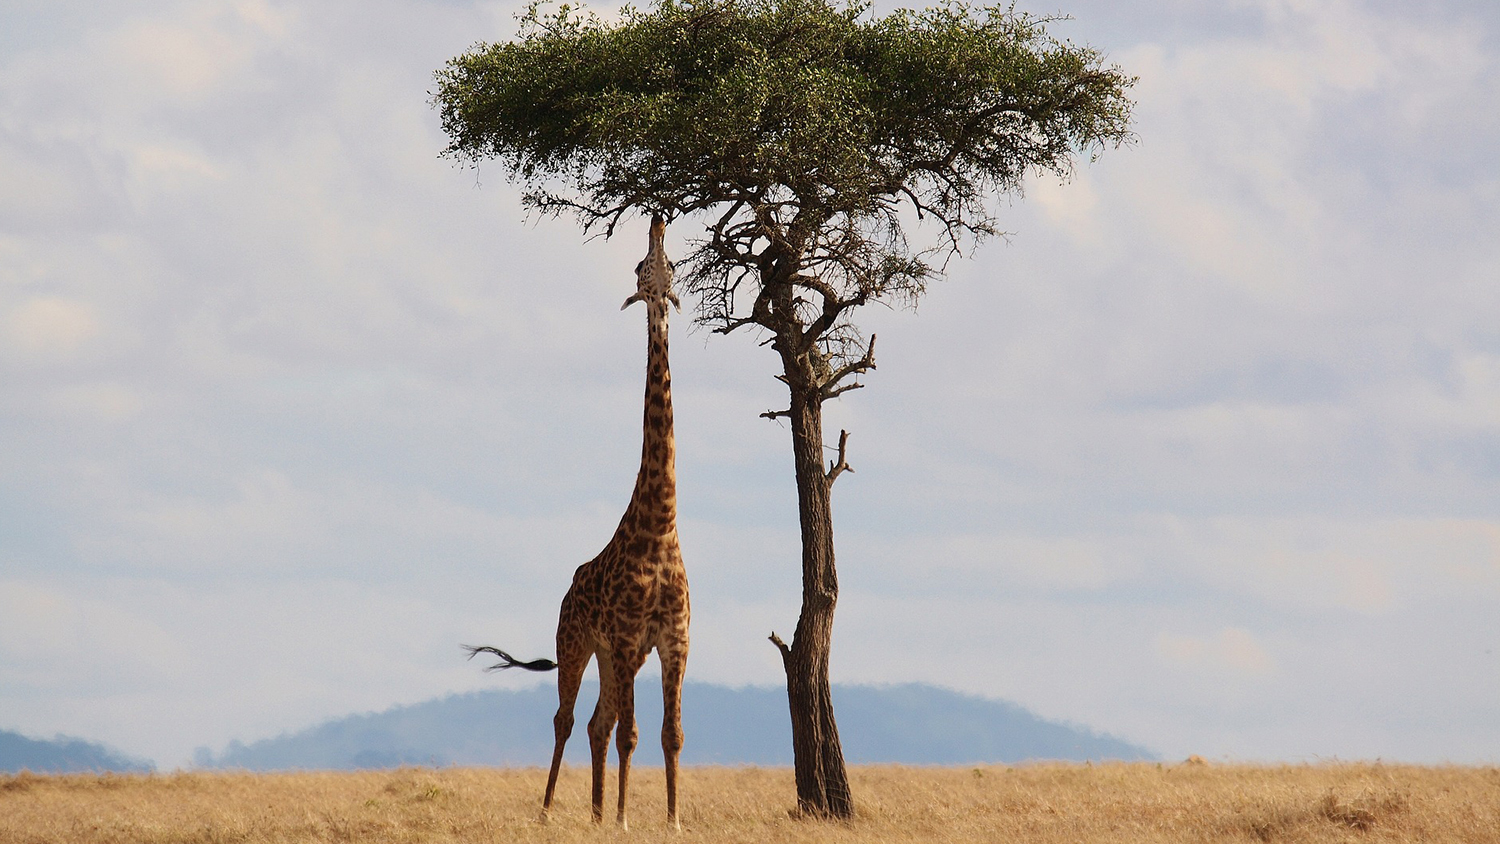 肯尼亚长颈鹿和树的照片。